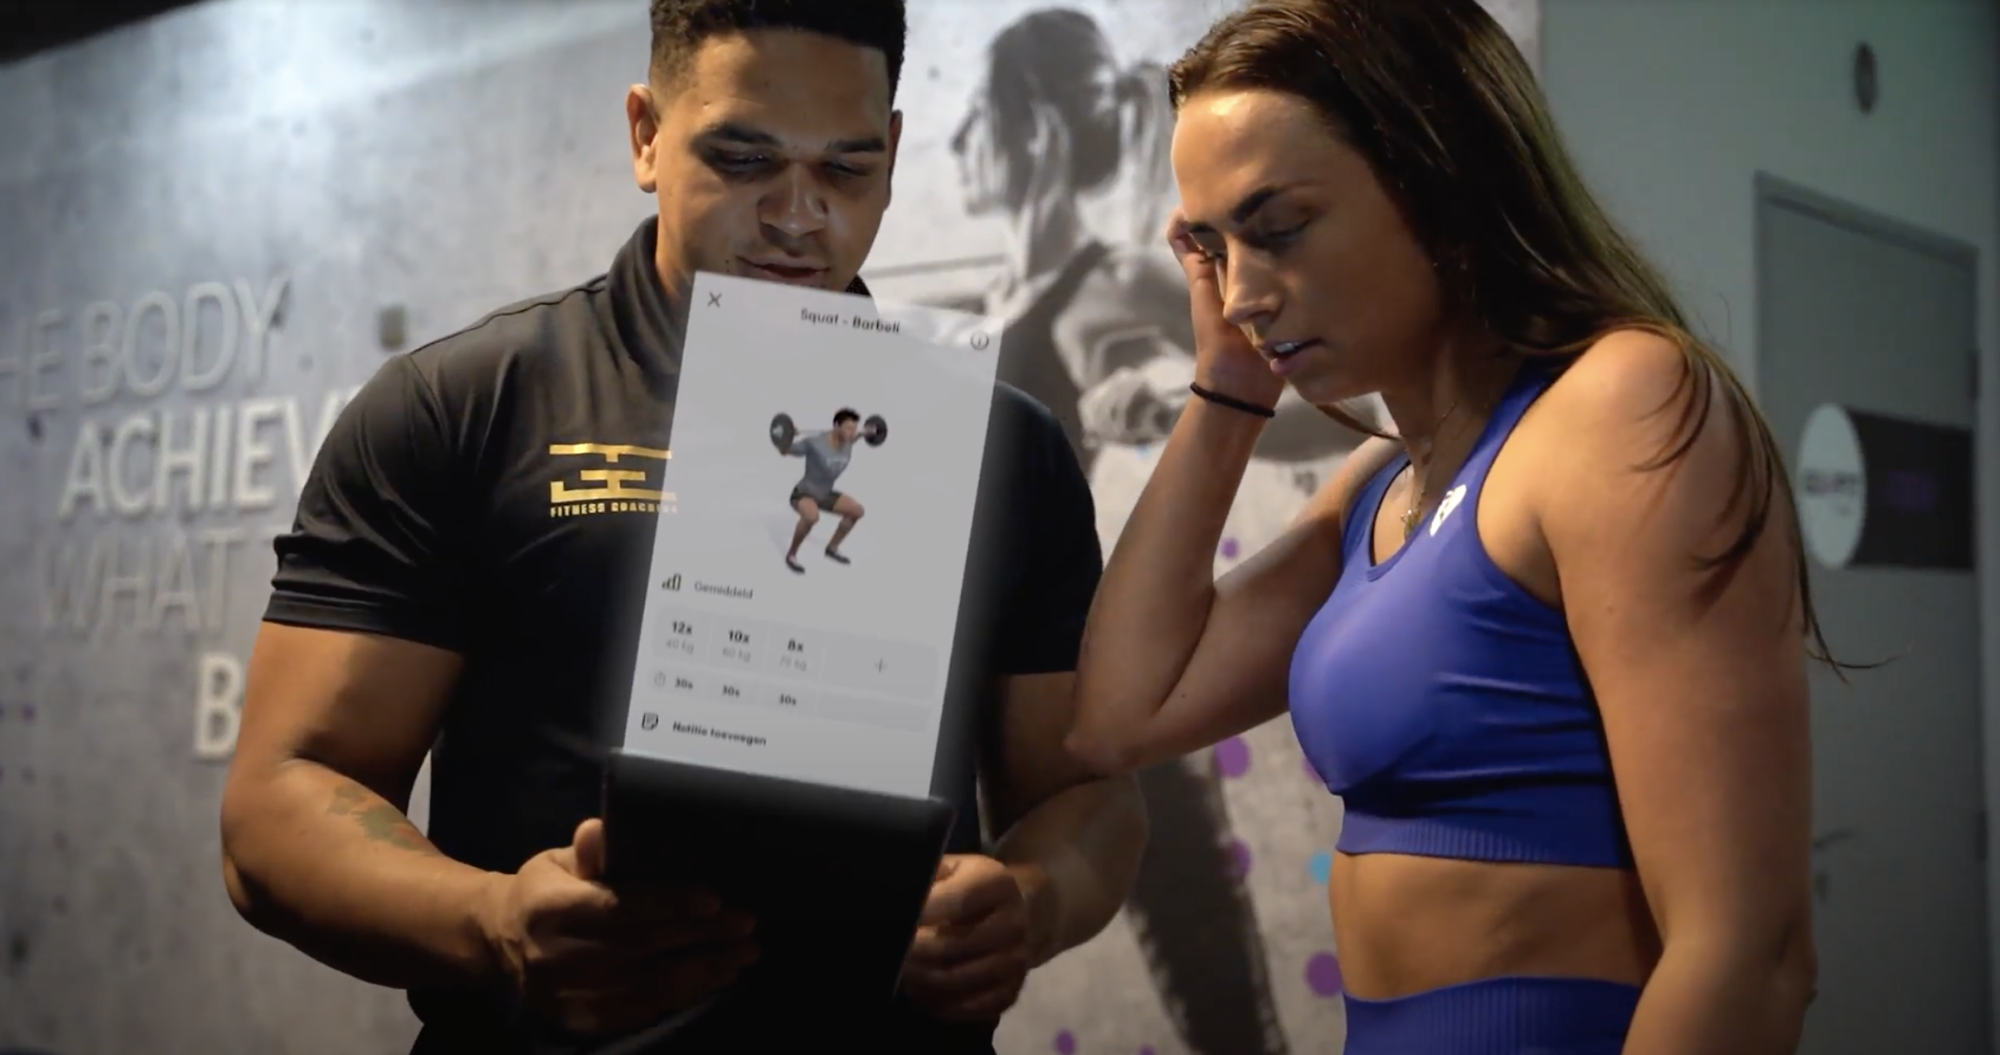 Galbin Espinosa legt een coaching klant uit hoe zijn Fitness app werkt